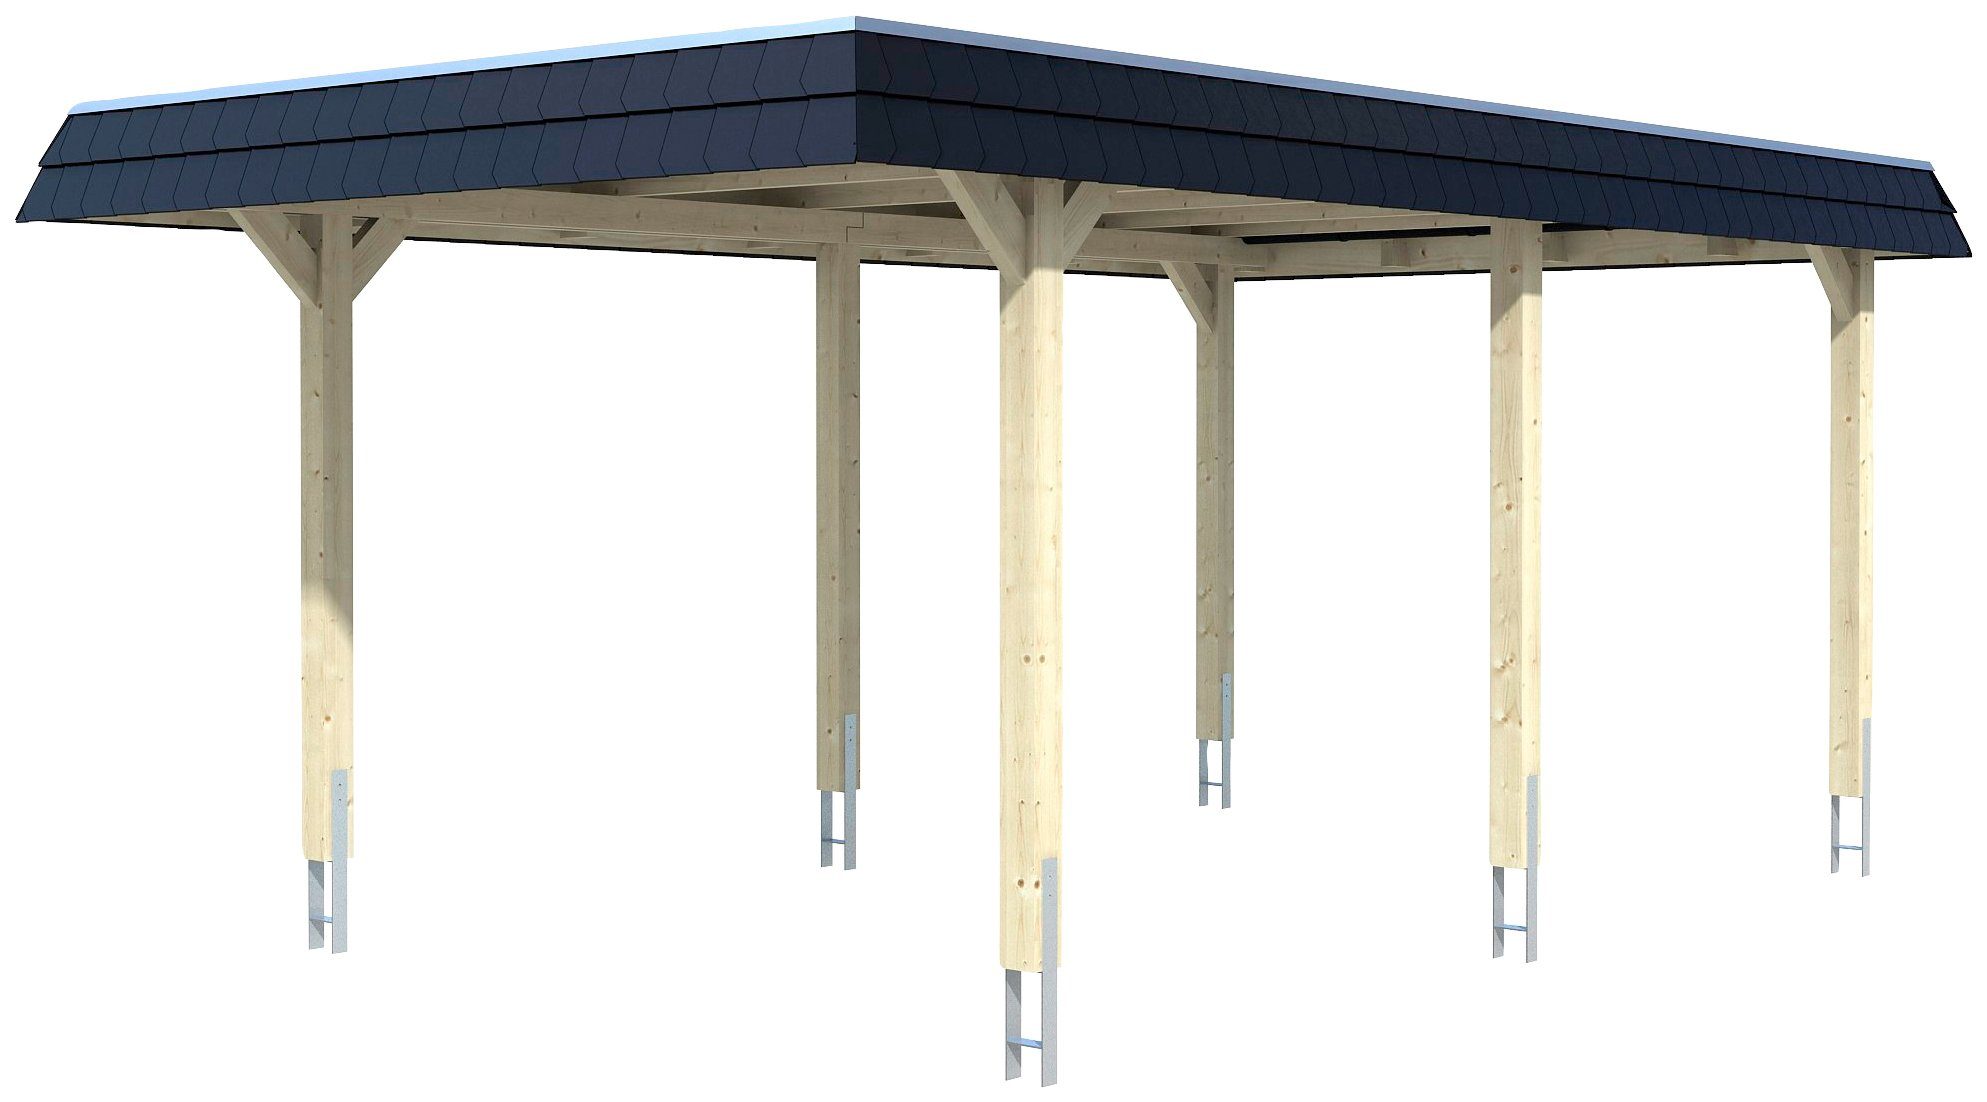 Skanholz Einzelcarport Wendland, BxT: 362x628 cm, 206 cm Einfahrtshöhe,  Flachdach-Carport, mit Aluminium-Dachplatten